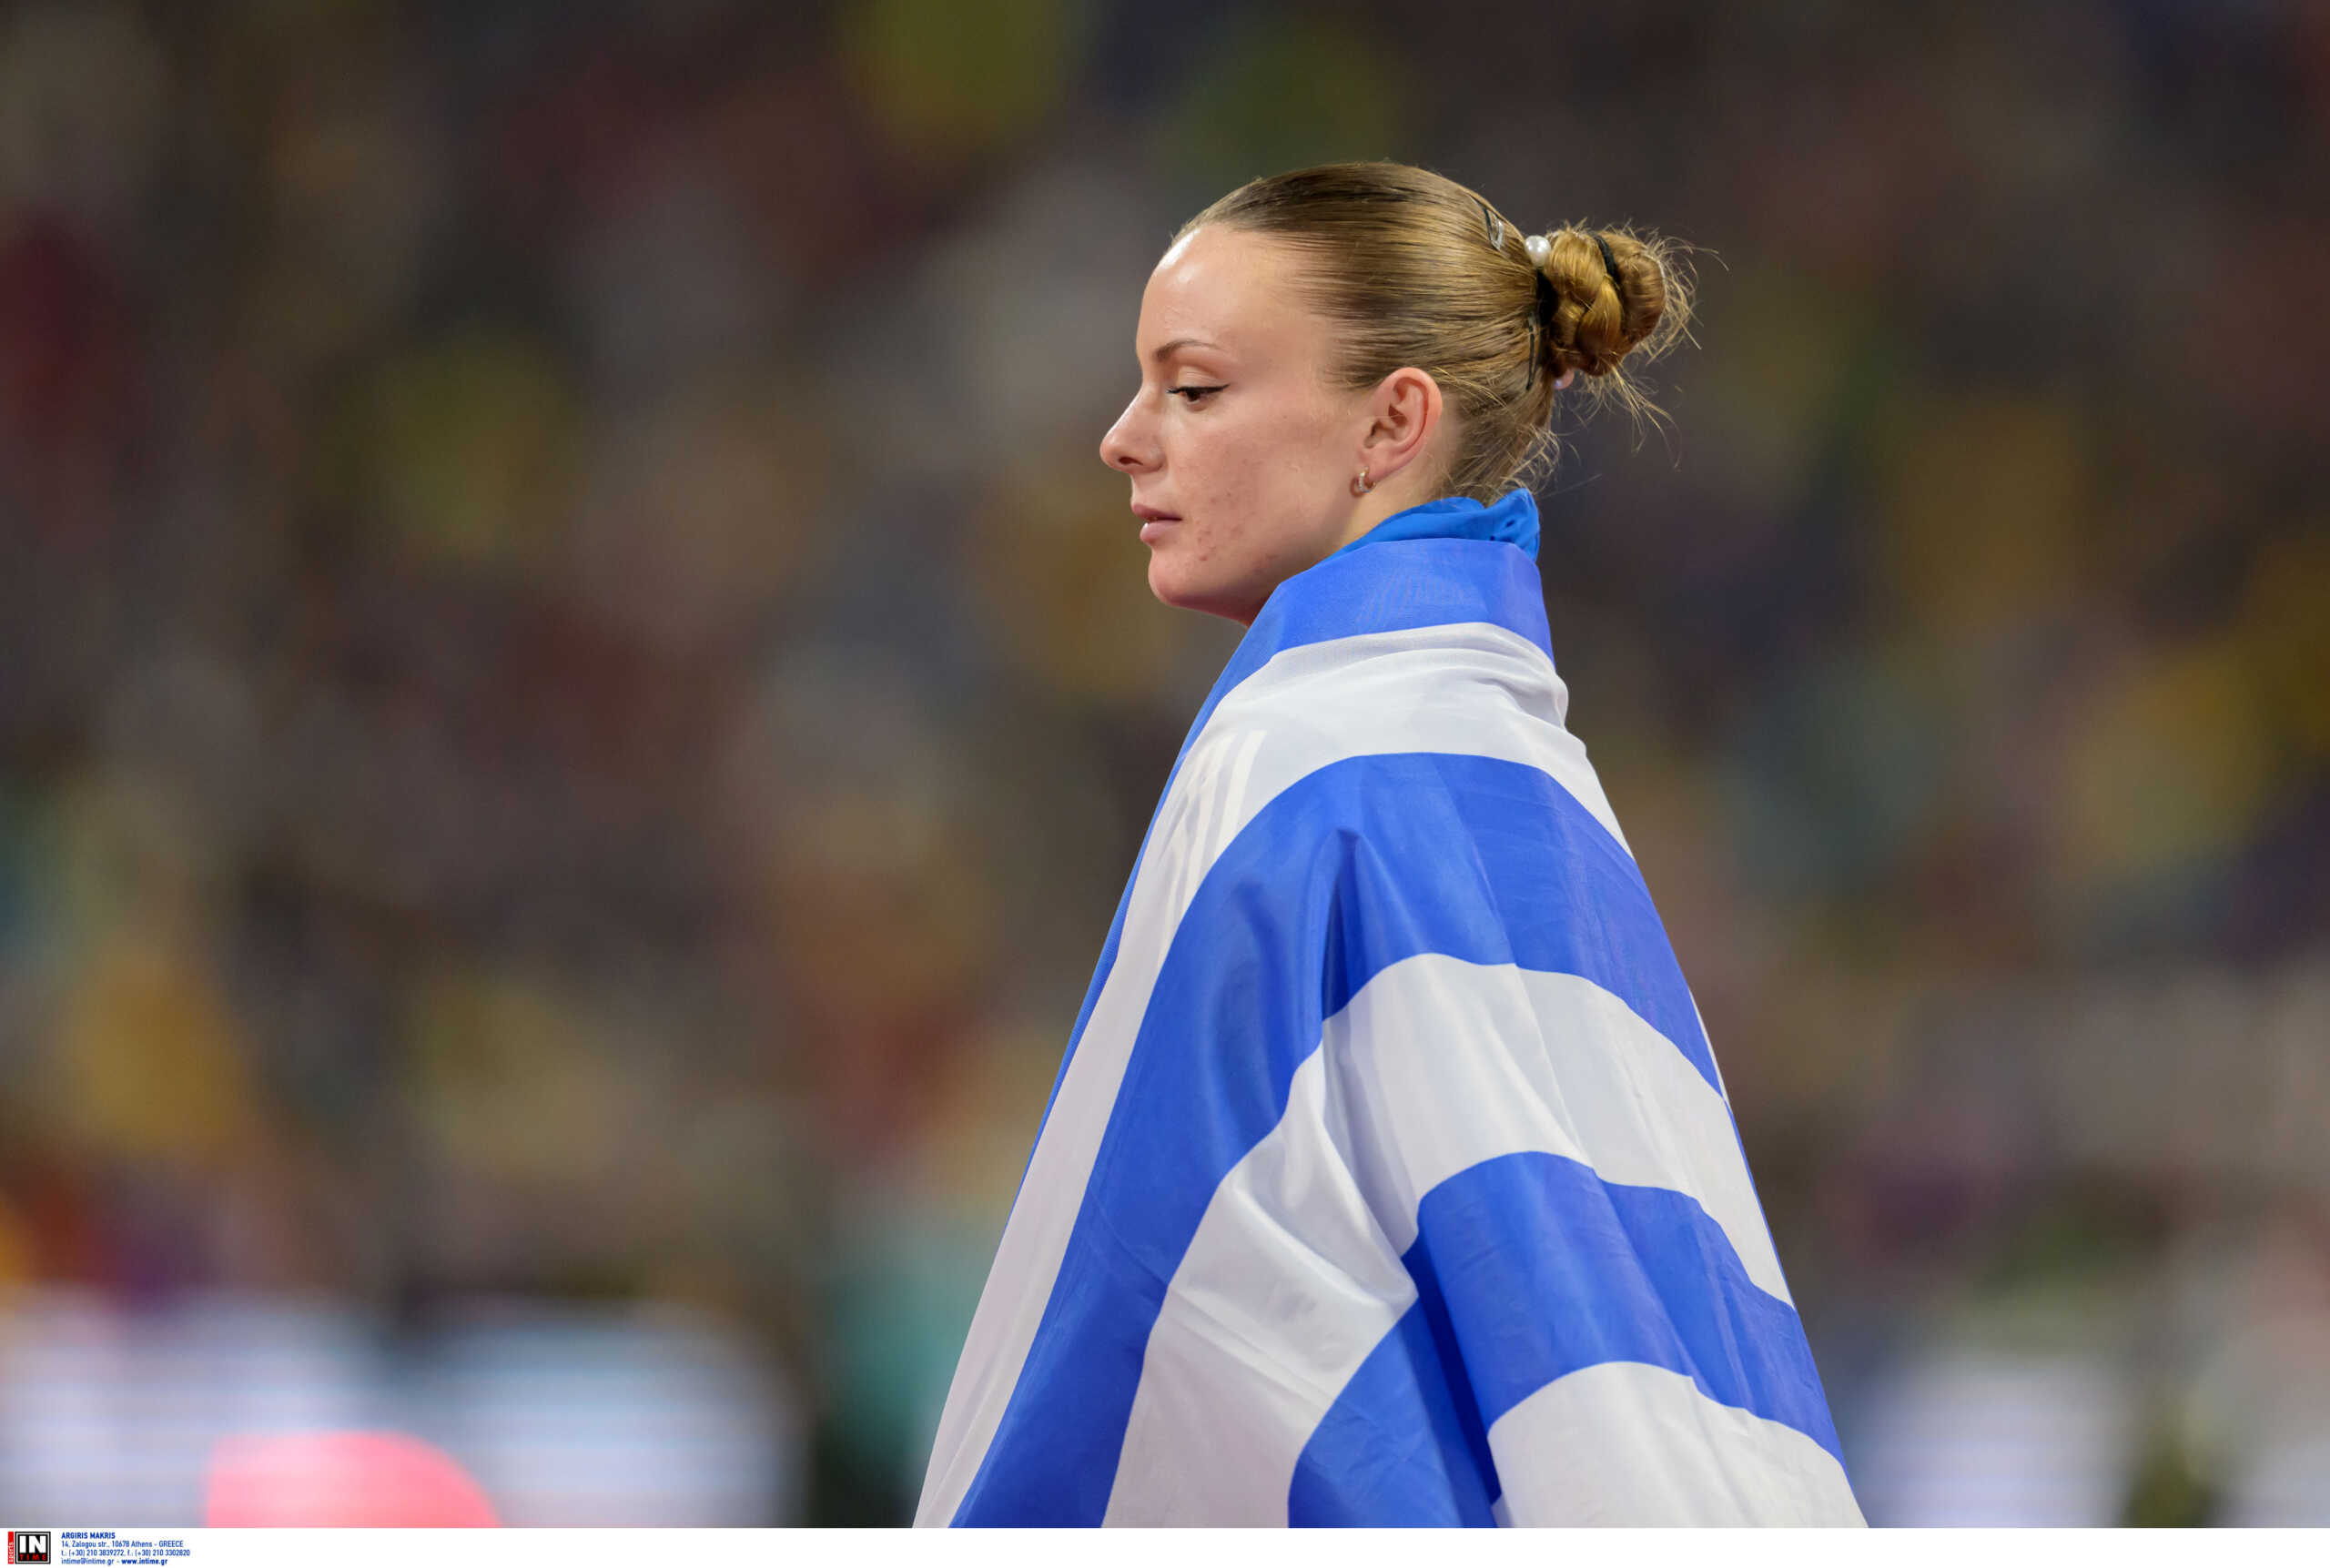 Ελίνα Τζένγκο: «Πήρα την ελληνική υπηκοότητα λόγων των επιδόσεων μου στον αθλητισμό»